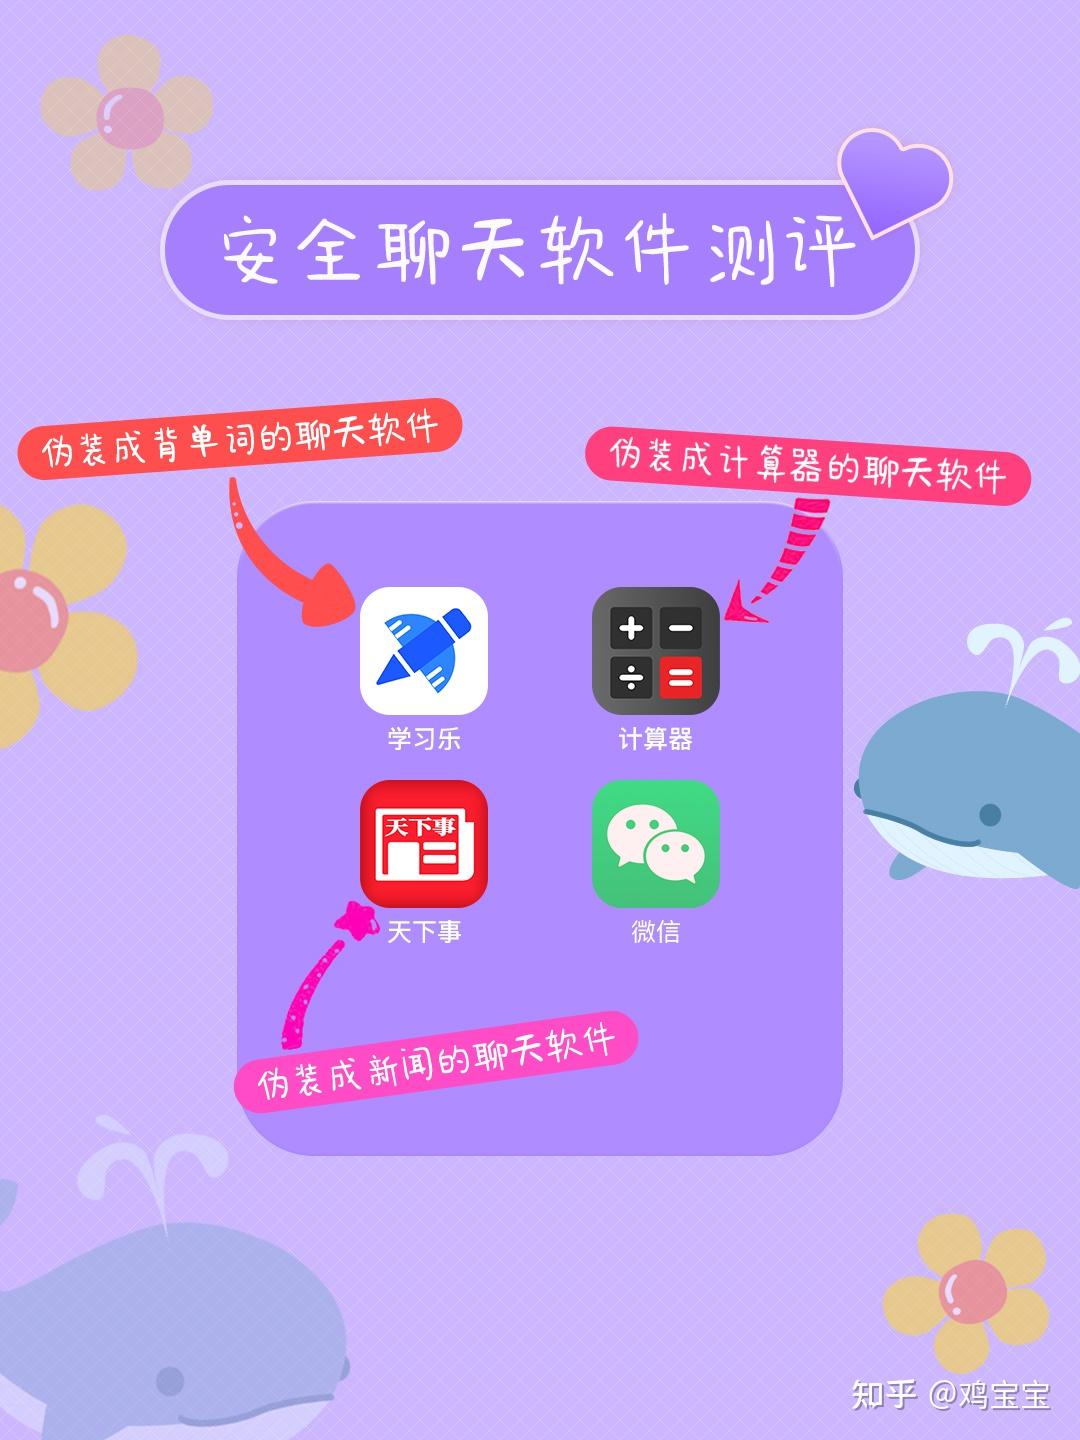 whatsapp中文手机版_中文版手机电子琴免费下载_中文版手机电子琴软件下载